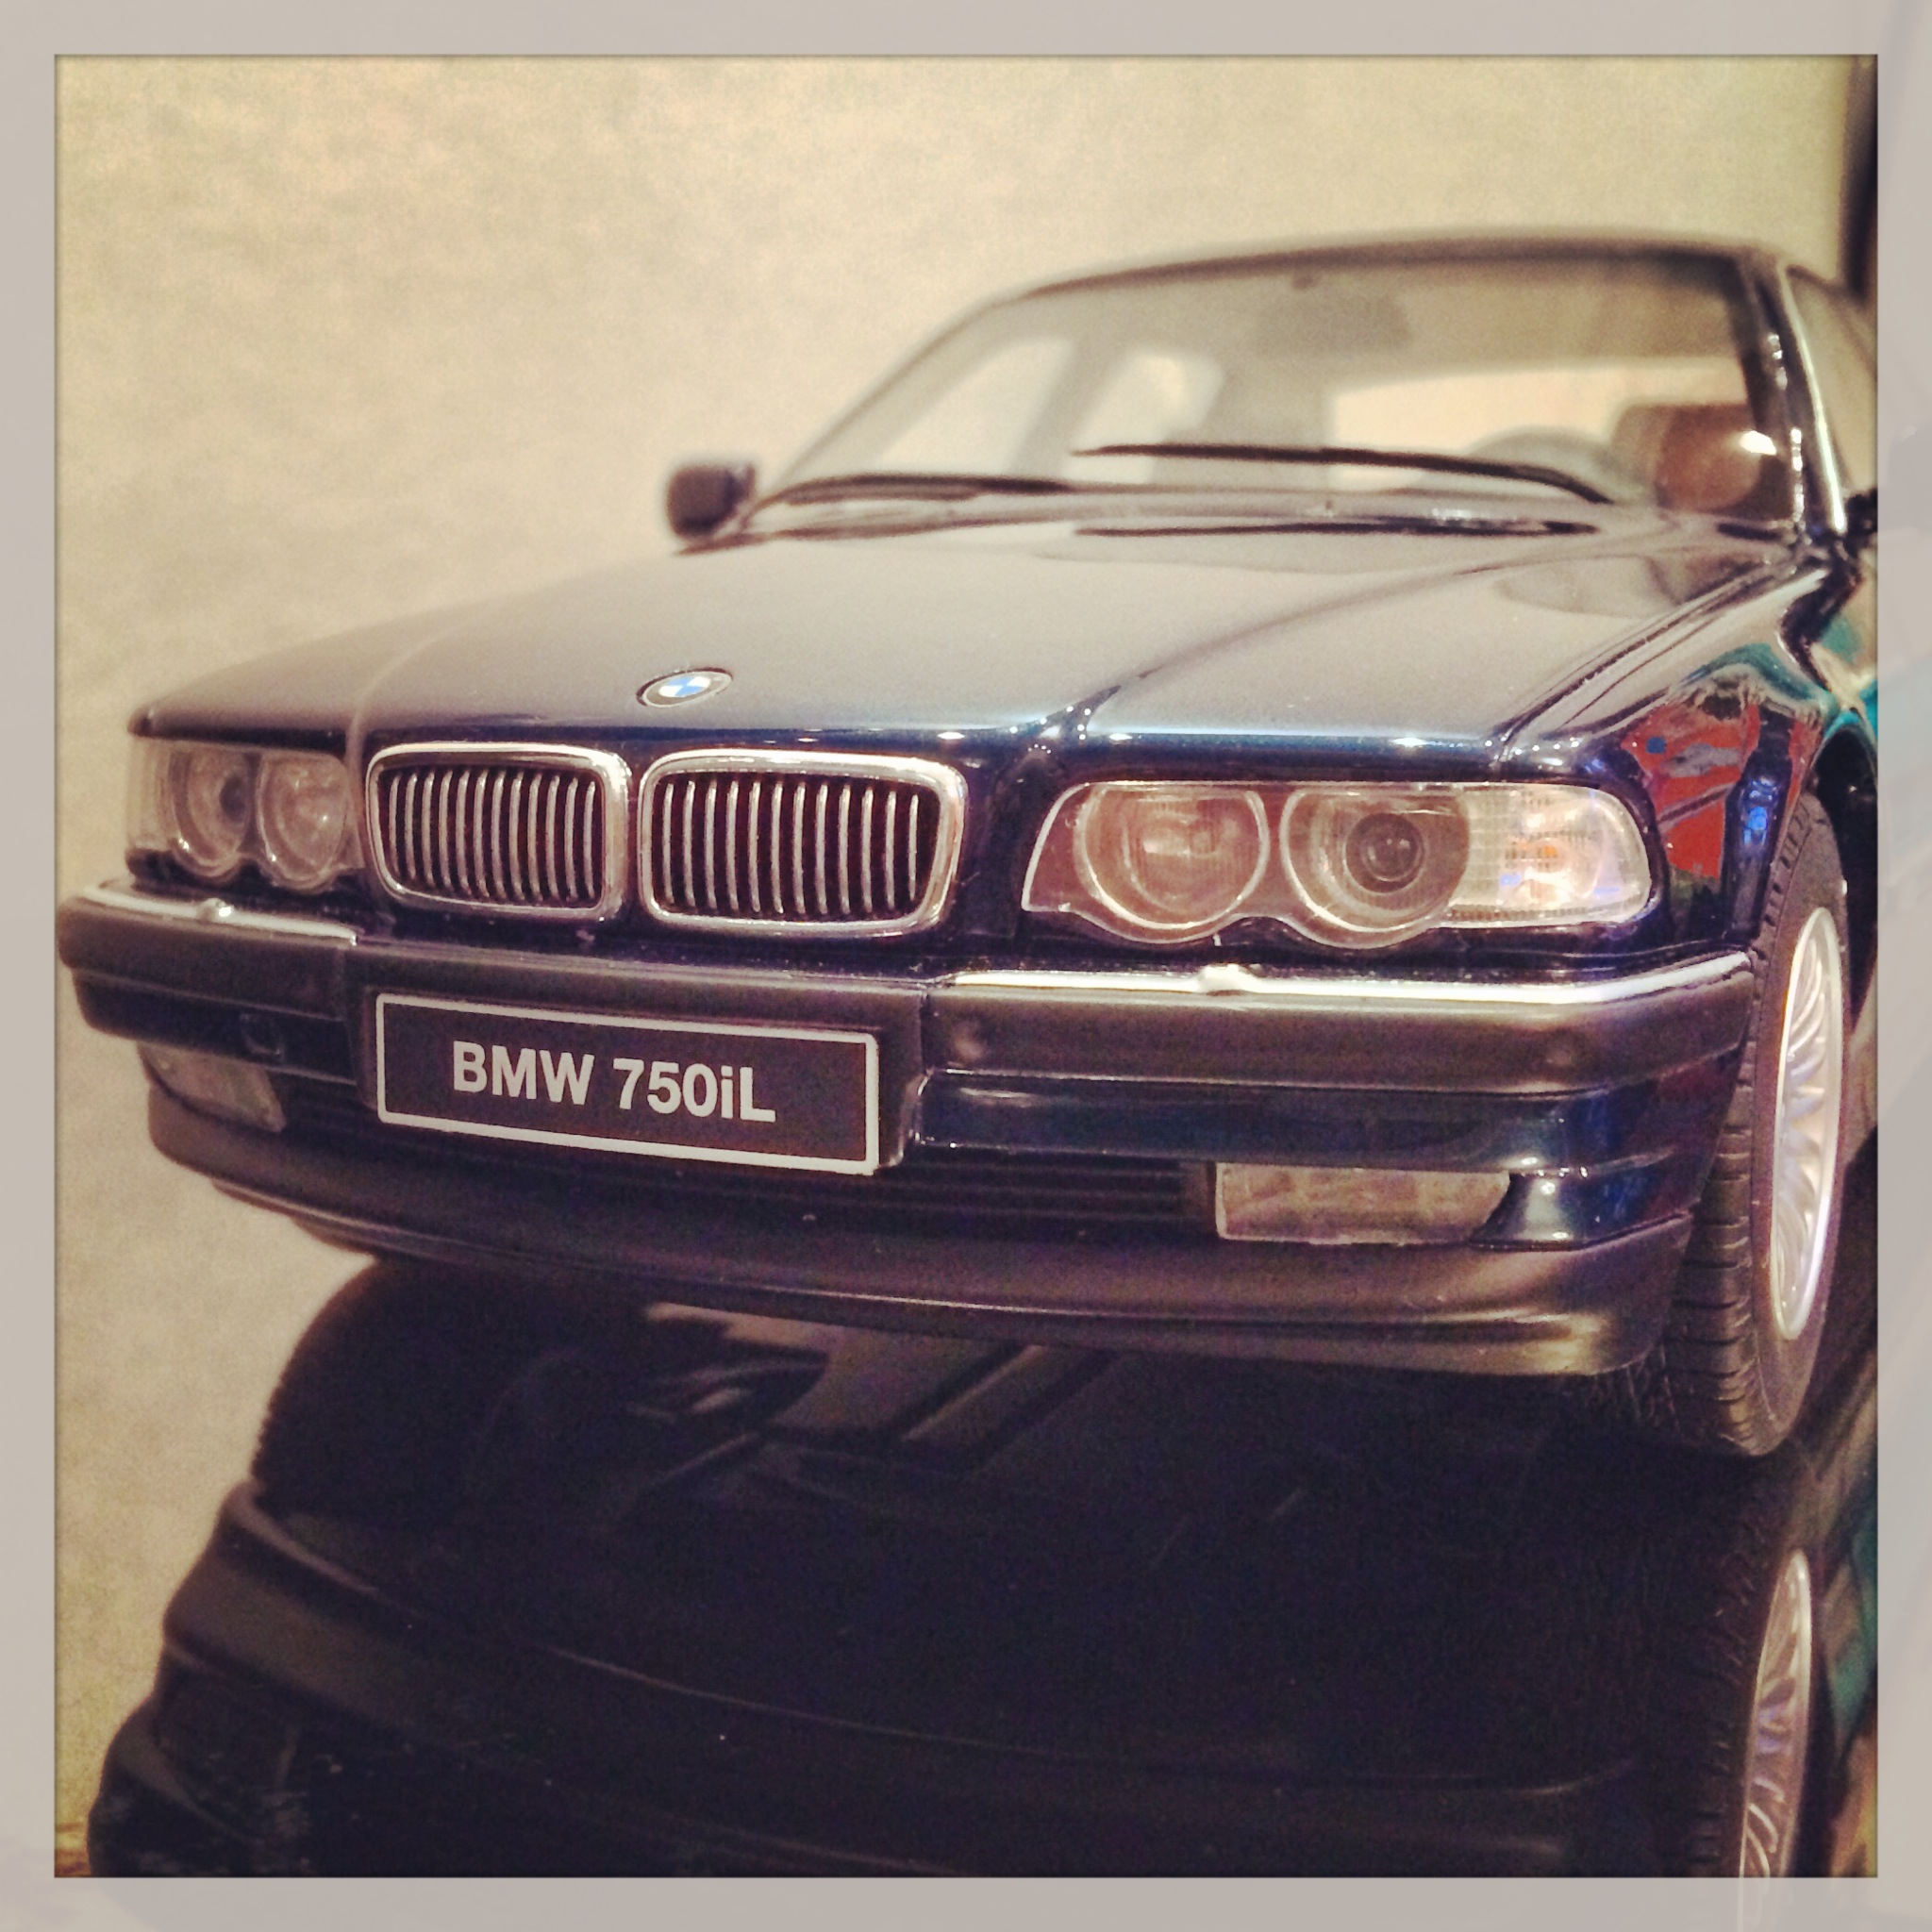 BMW 750iL (E38) blue, le 568 of 2,000pcs. (otto)